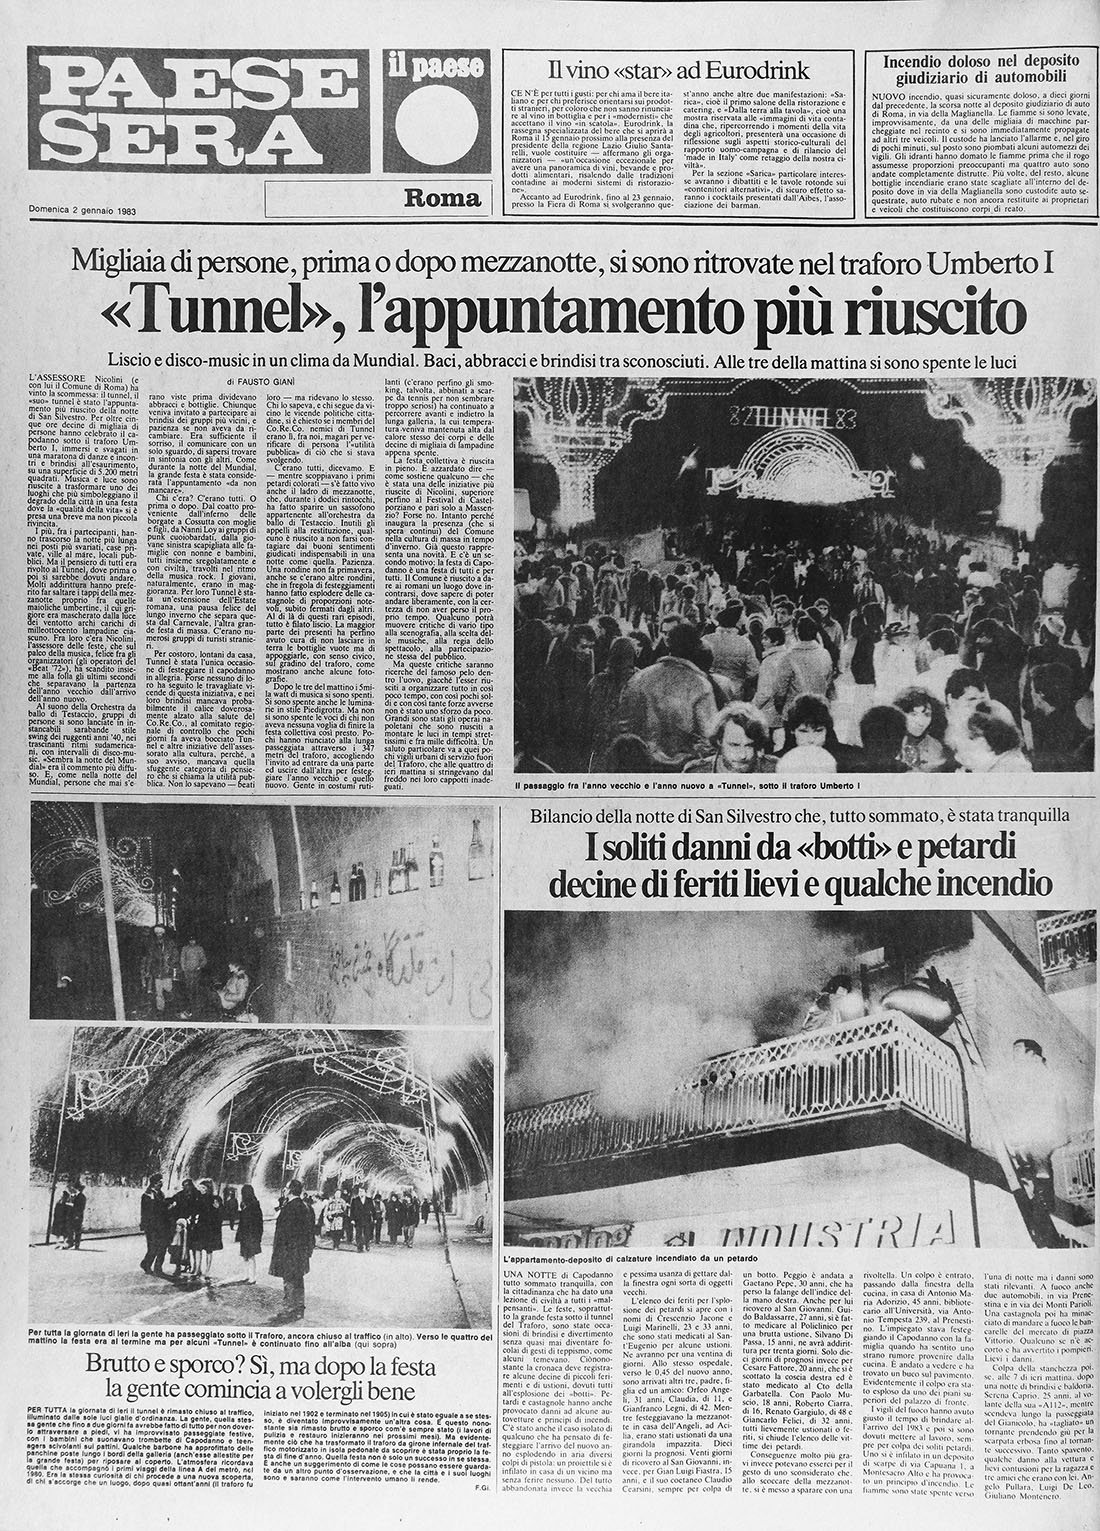 “Paese Sera”, 2 gennaio 1983. Pagina dedicata alla festa di Capodanno 82 Tunnel 83